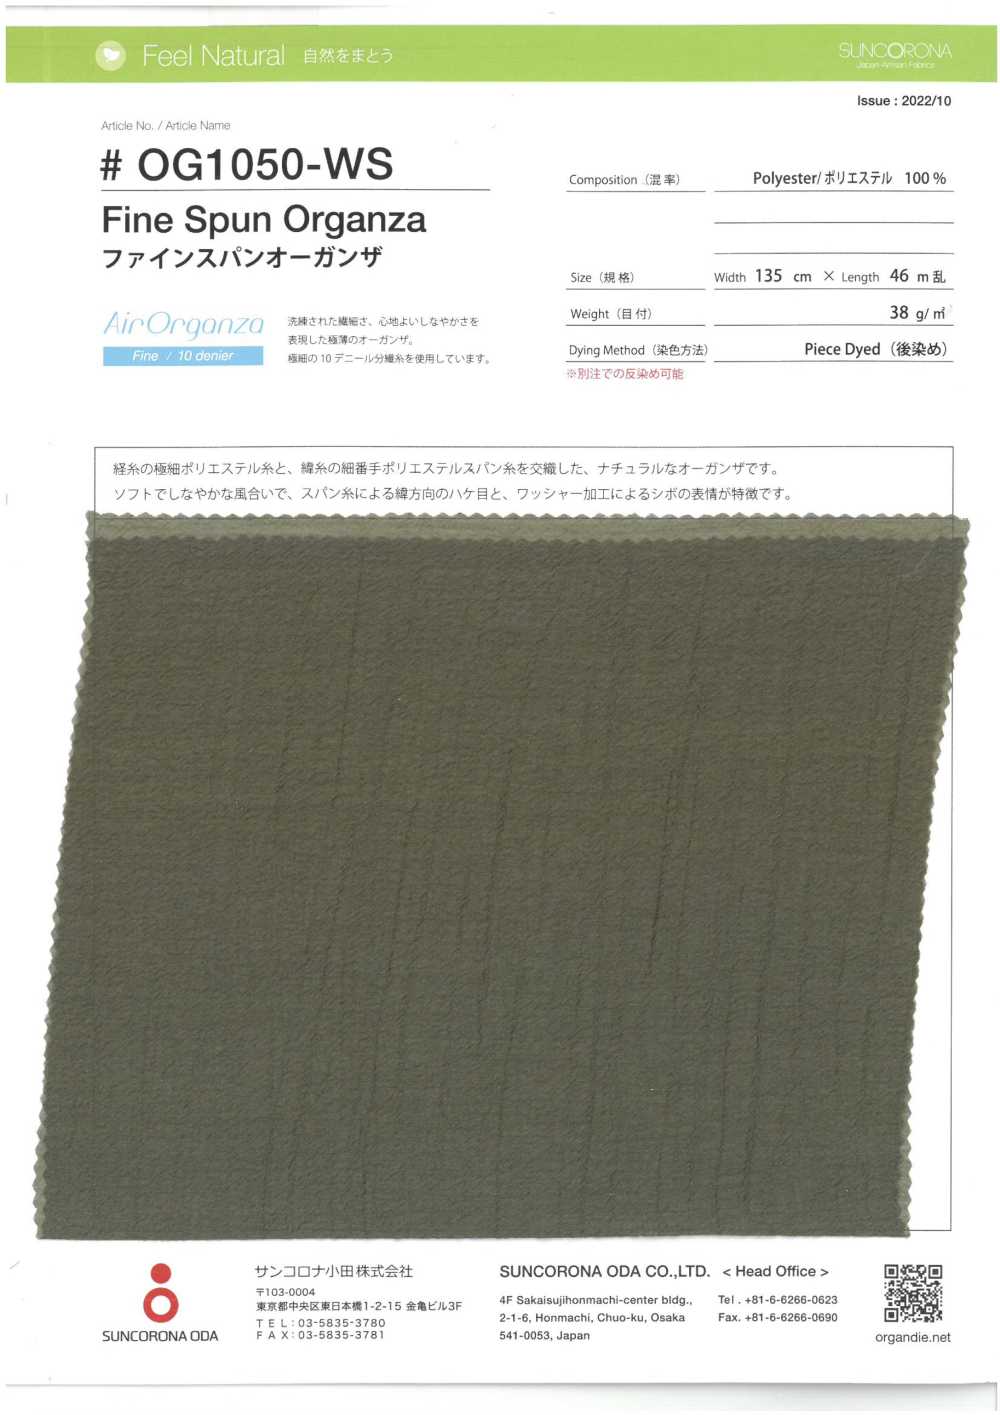 OG1050-WS Organza Fiado Fino[Têxtil / Tecido] Suncorona Oda